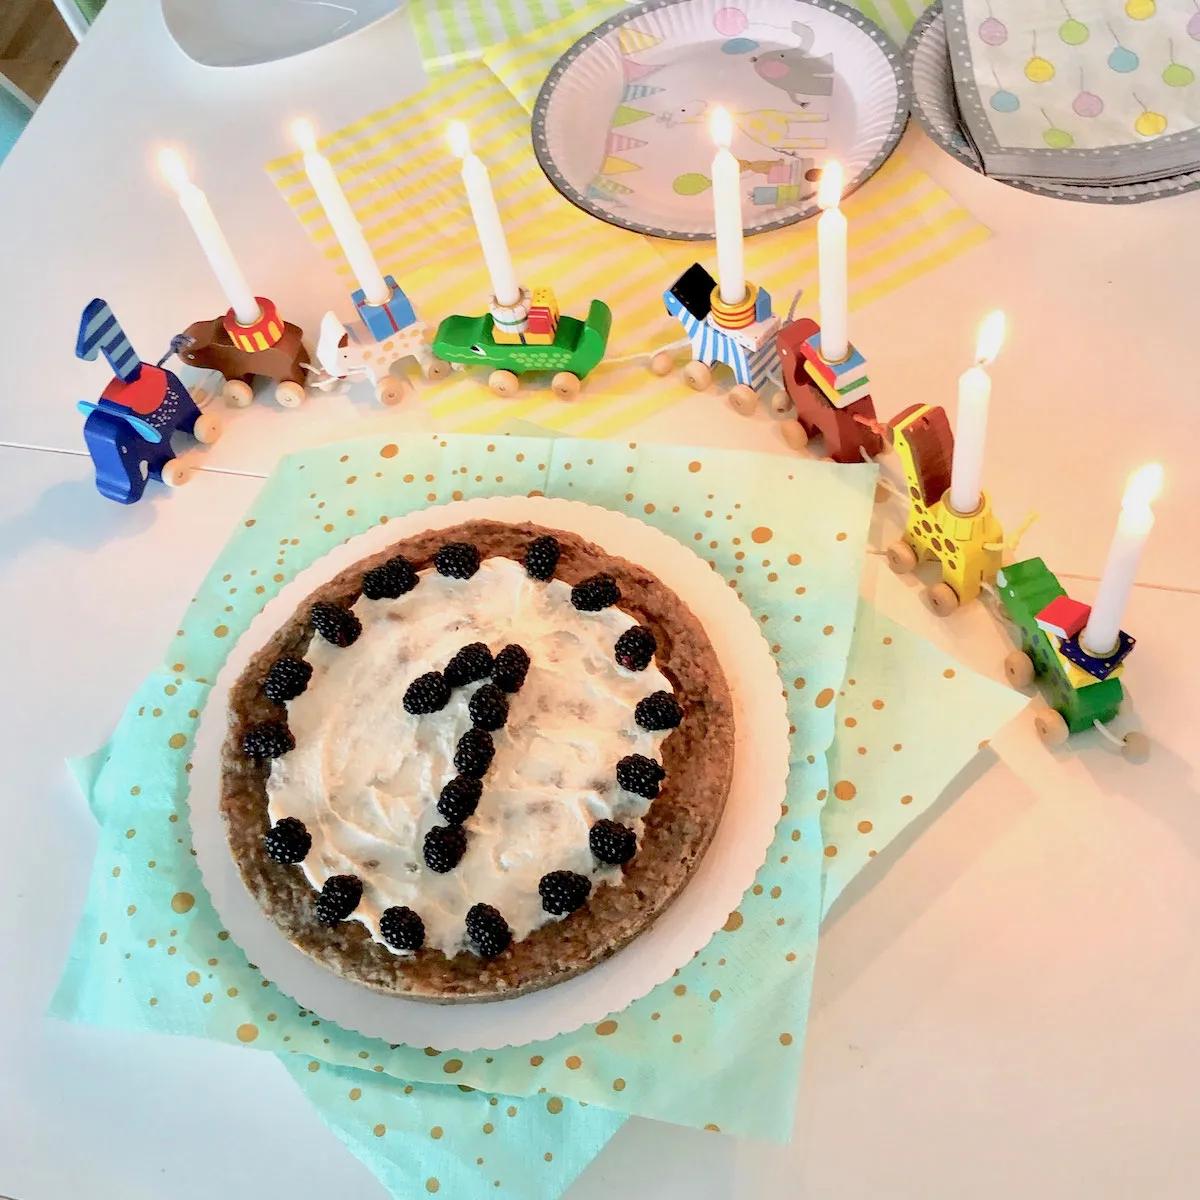 Erster Geburtstagskuchen ohne Zucker - Blog für perfekt unperfekte Mamas